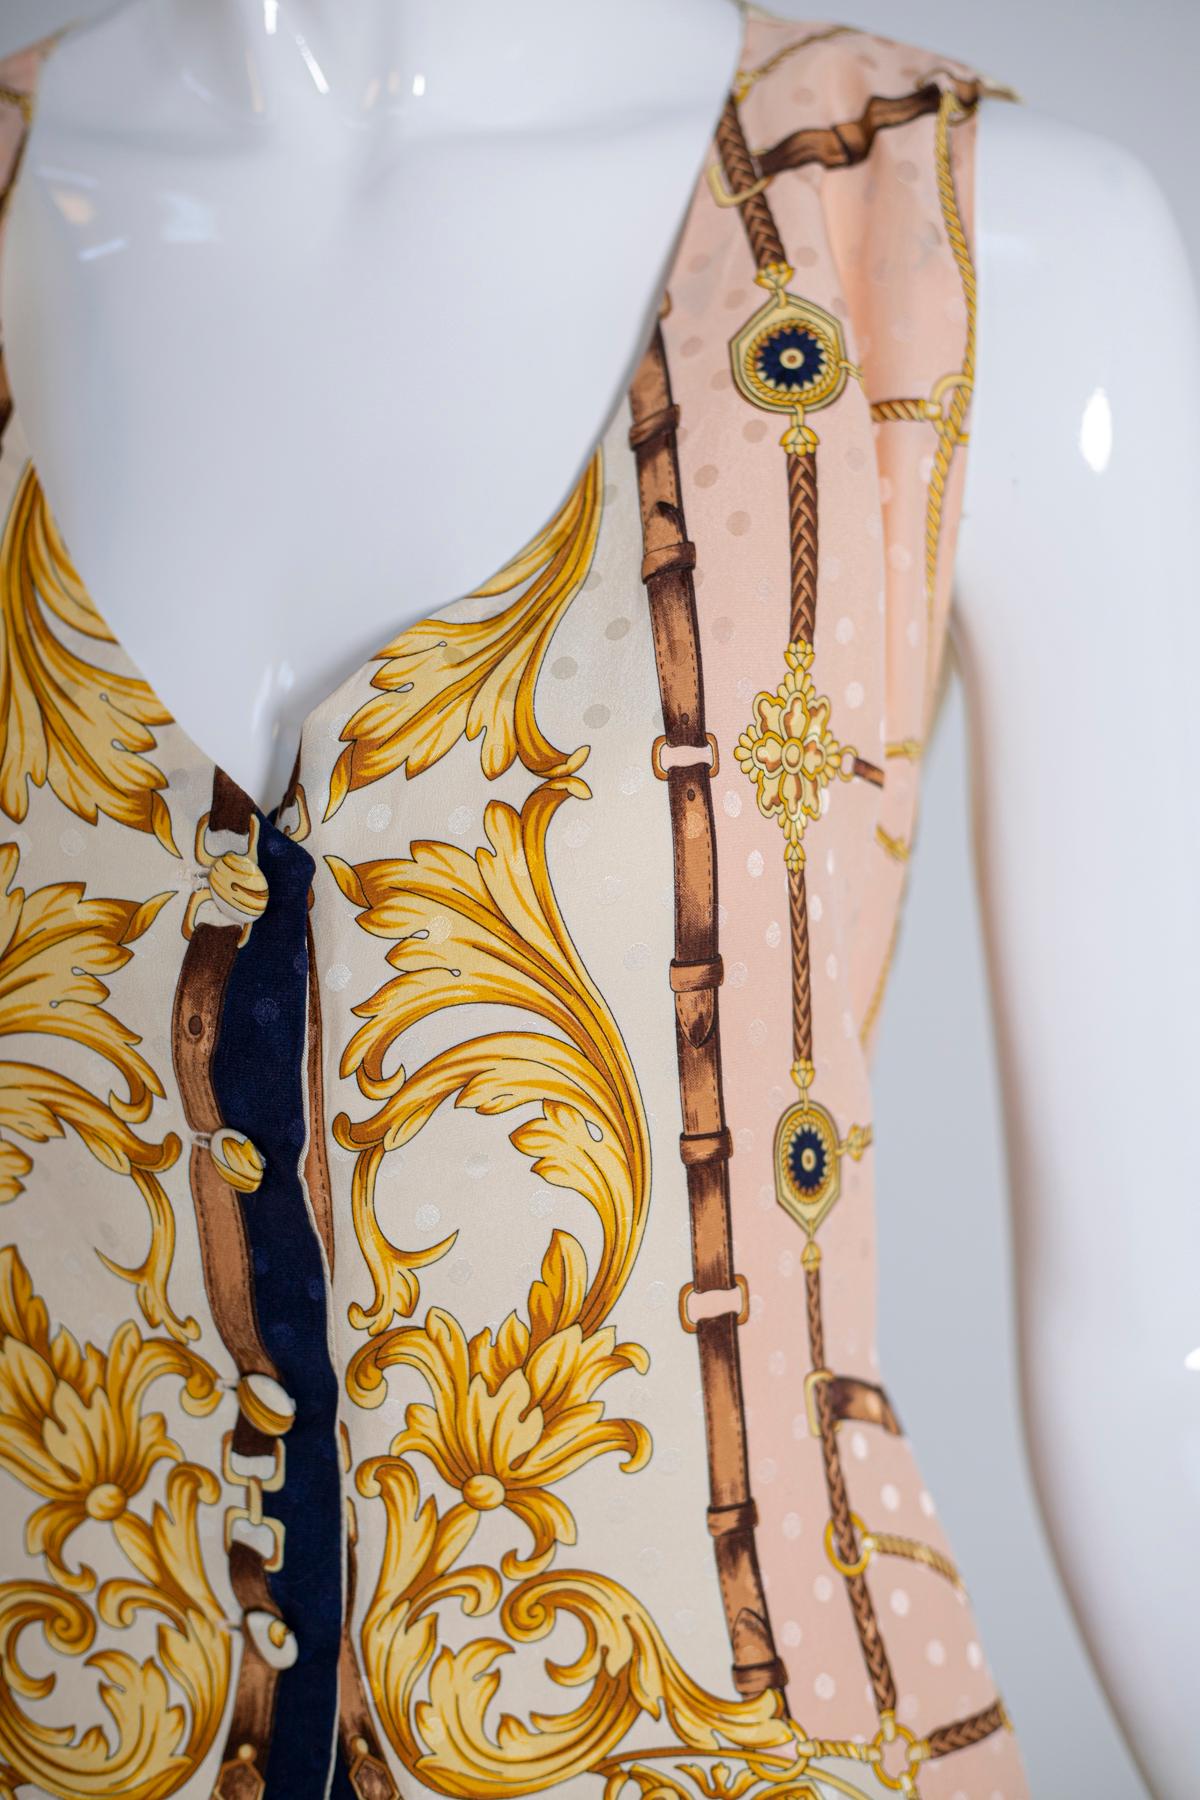 Women's Renato Balestra Eccentric Sleeveless Blouse in Pure Silk For Sale